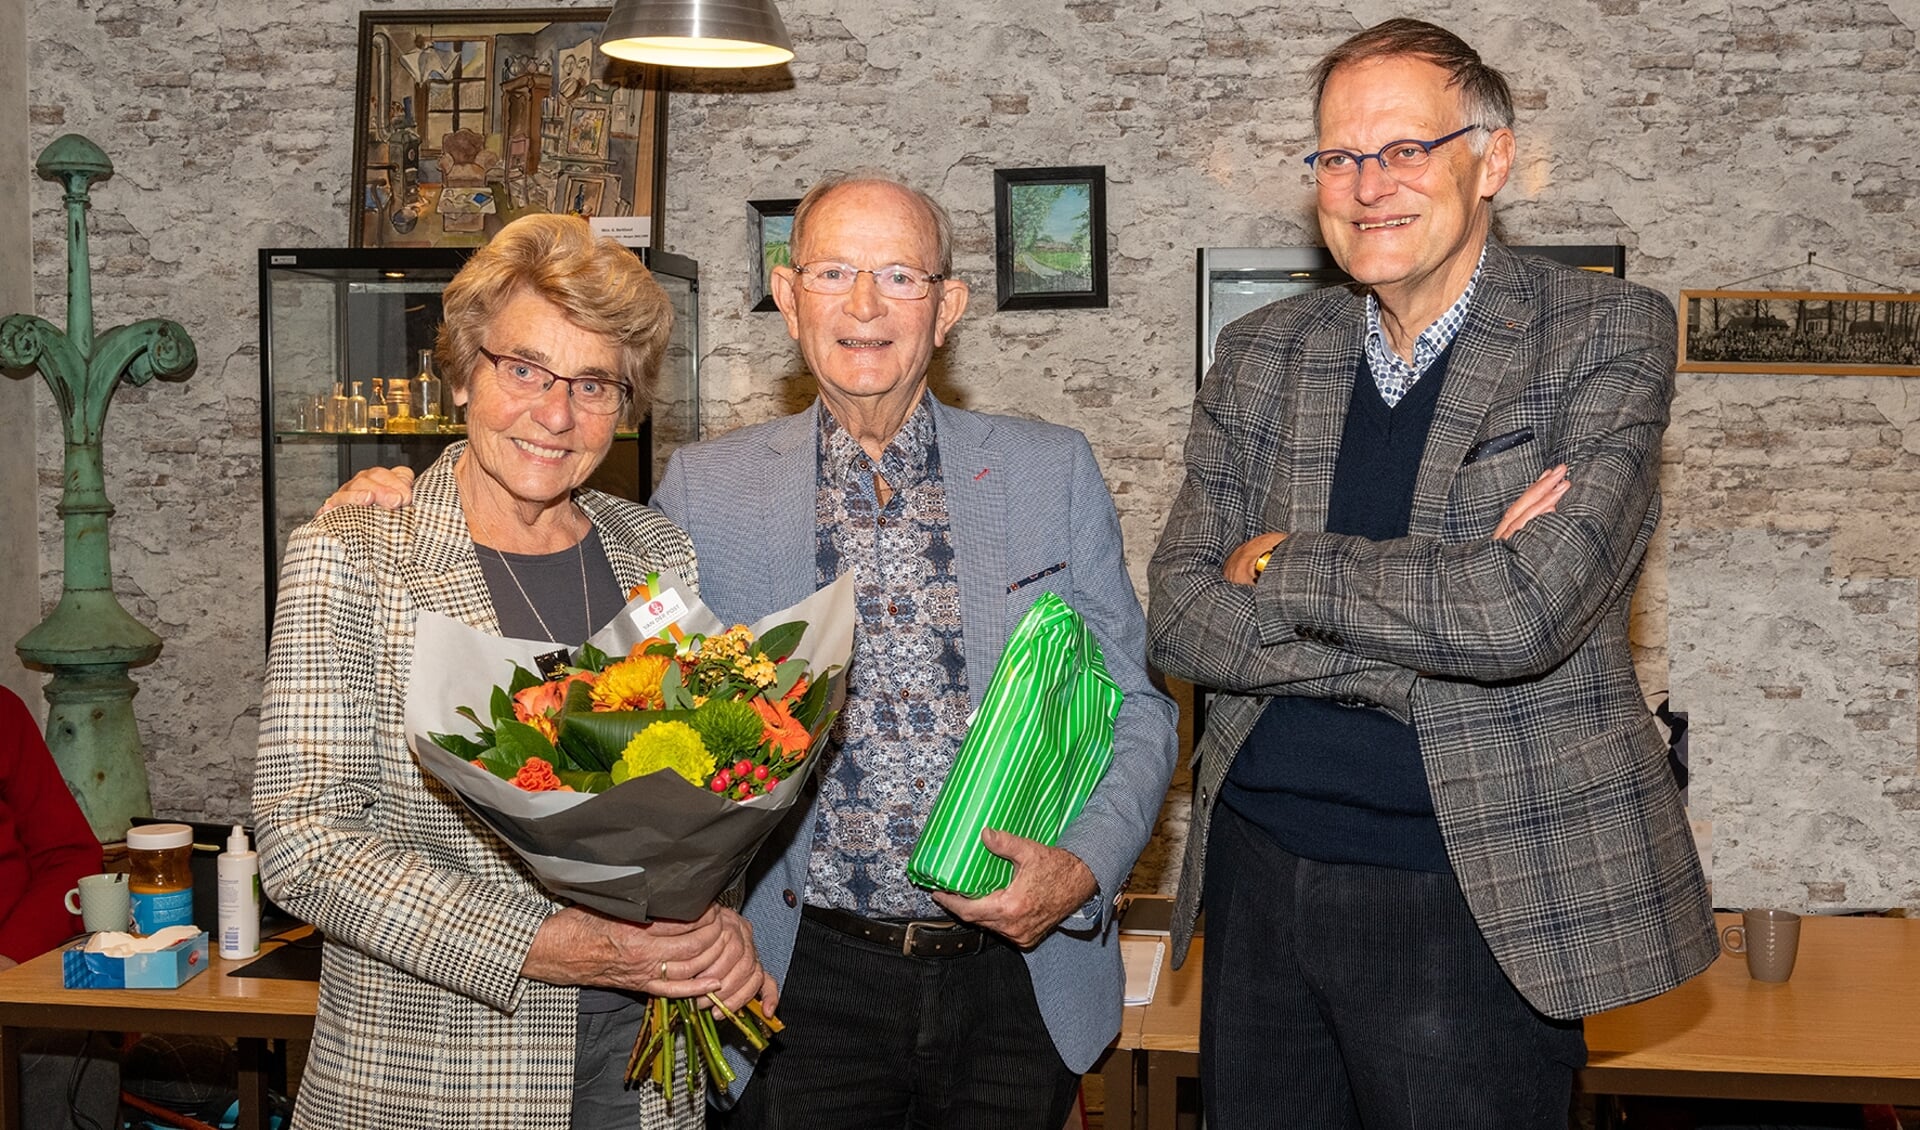 Bert Kunne zijn vrouw Aad, was alle 27 jaar gastvrouw bij bijeenkomsten van de SVvOH. | Foto: Harry Prins, tekst Jacolien vd Valk